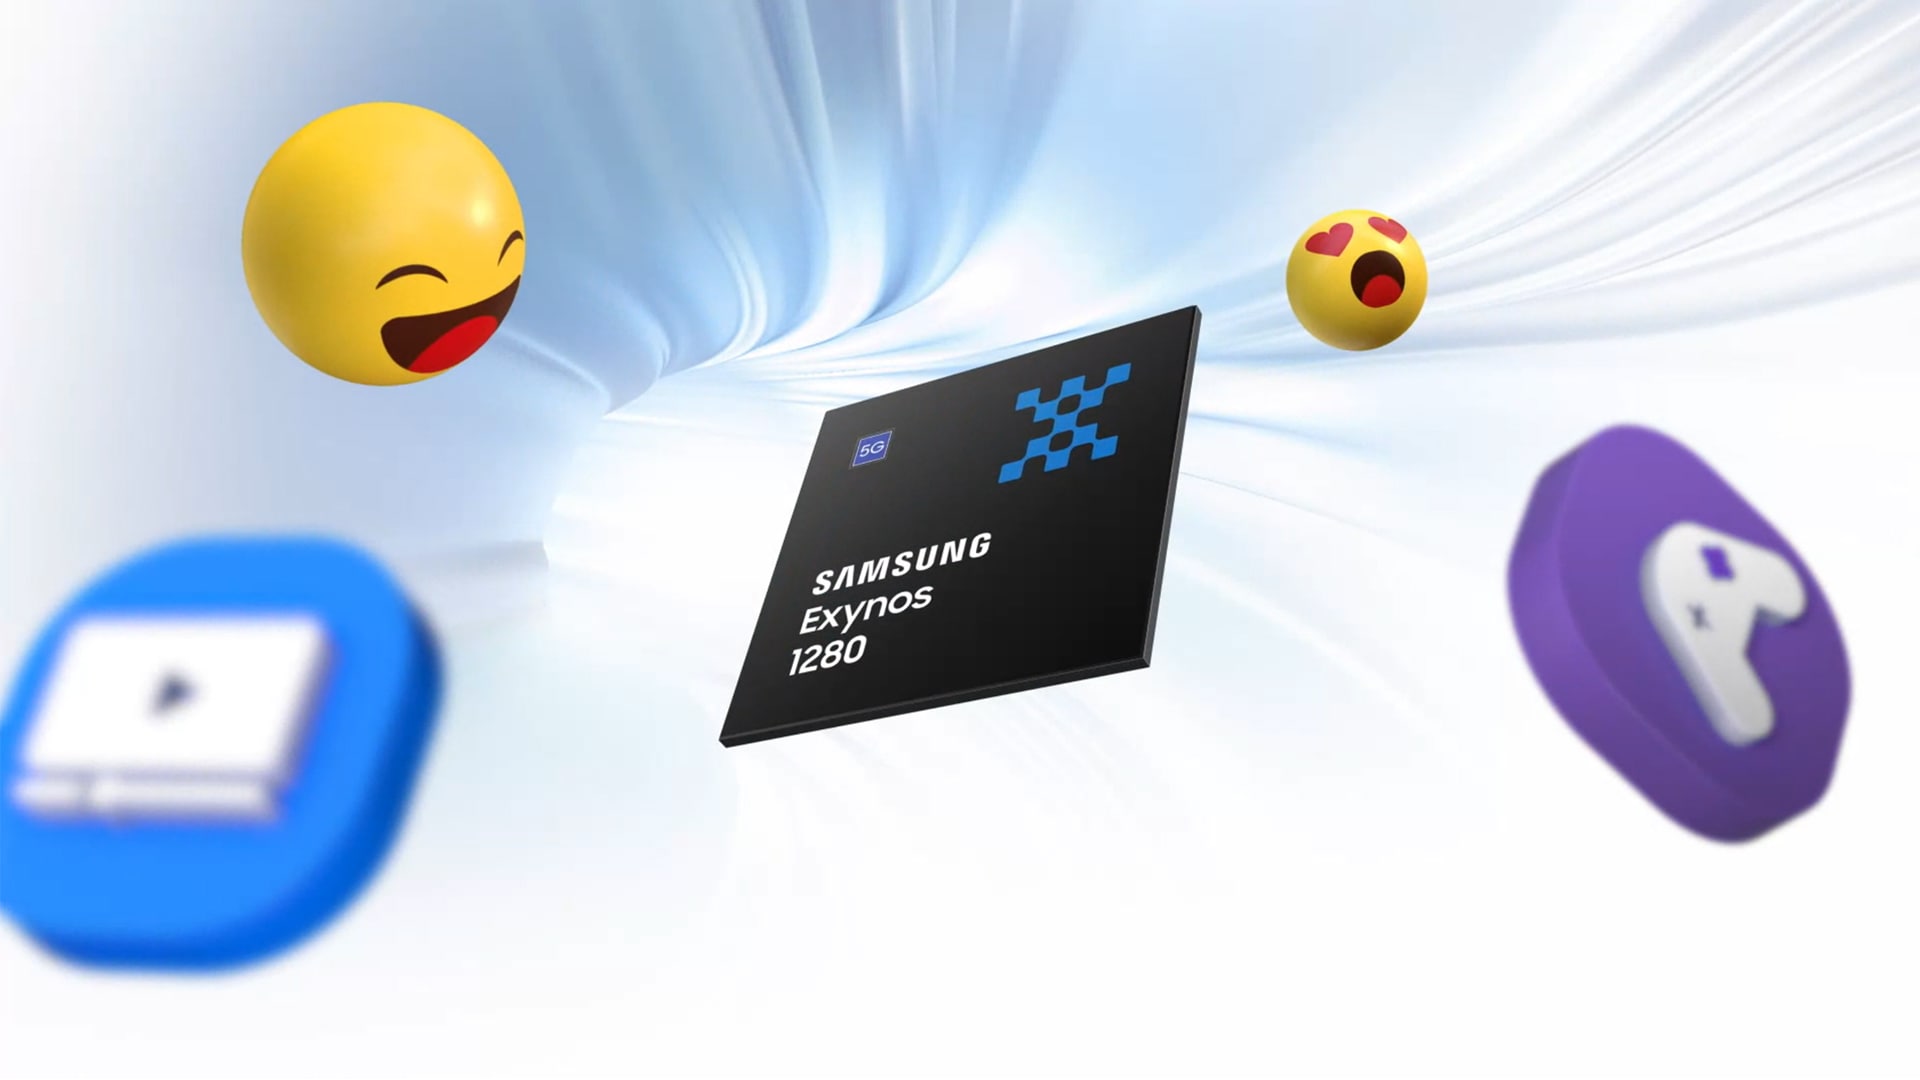 Samsung ujawnił charakterystykę Exynos 1280: 5-nanometrowy układ do smartfonów ze średniej półki cenowej